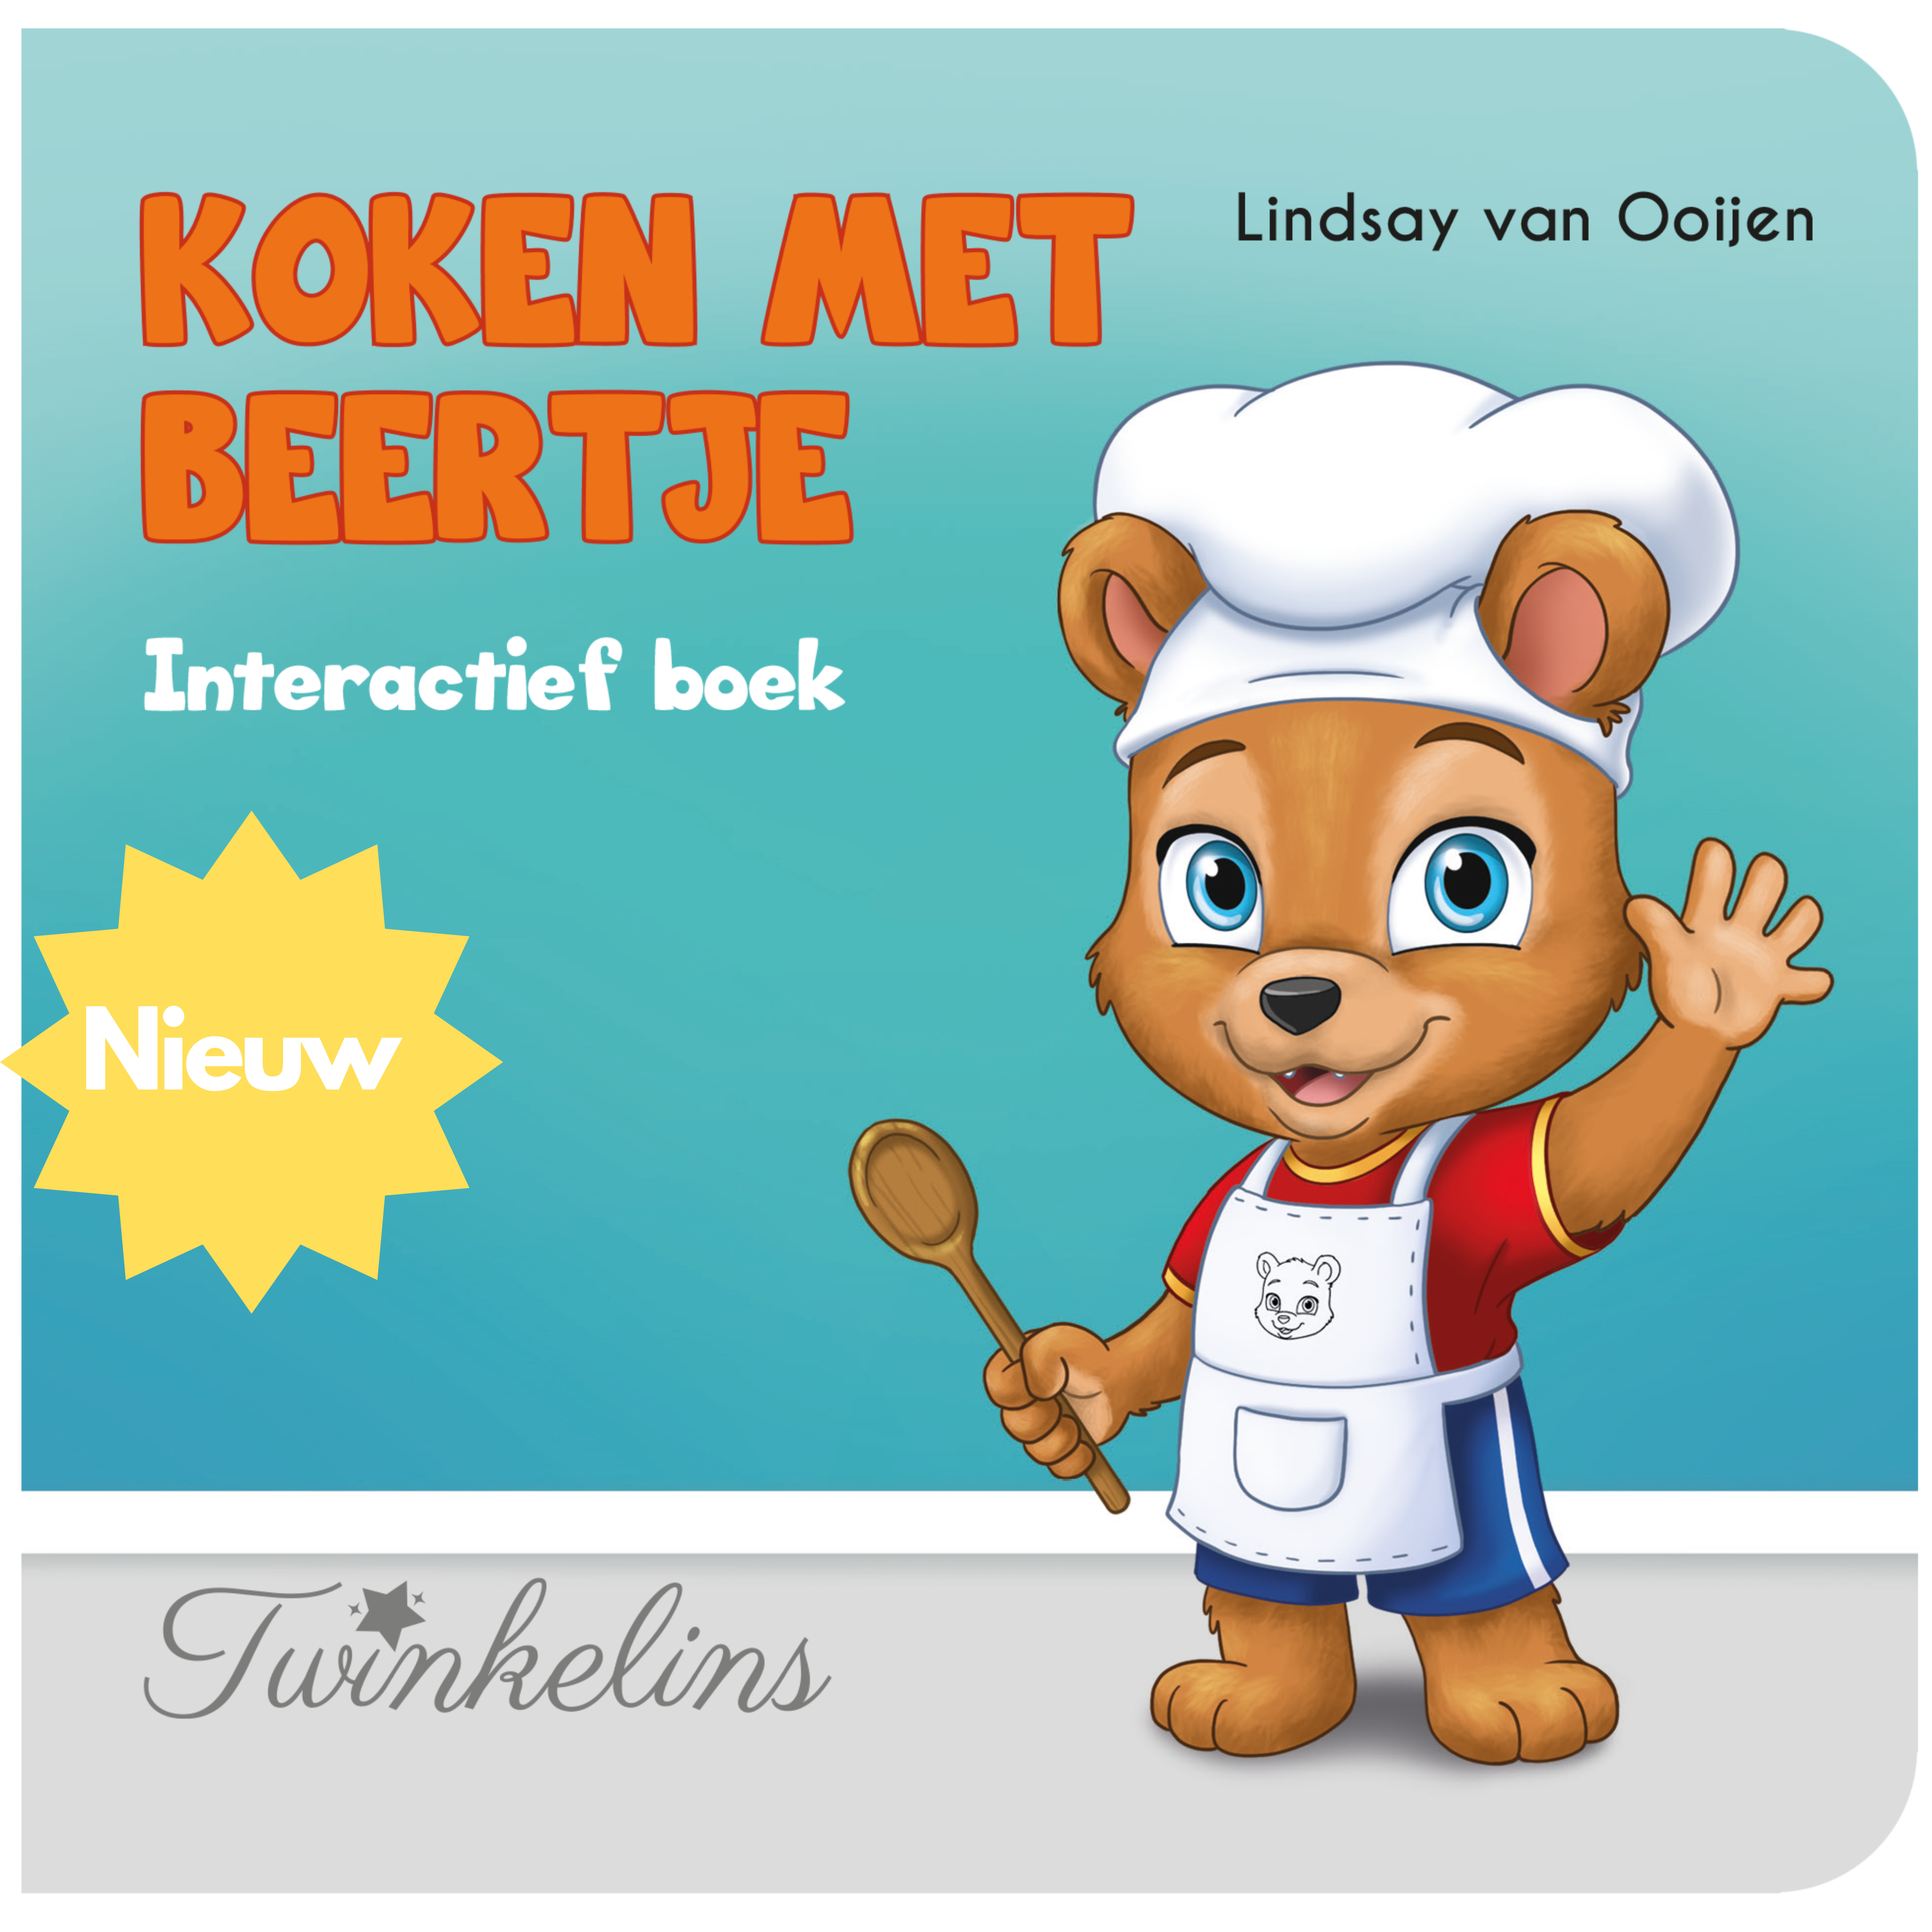 Interactief kinderboek Koken met Beertje - Lindsay van Ooijen